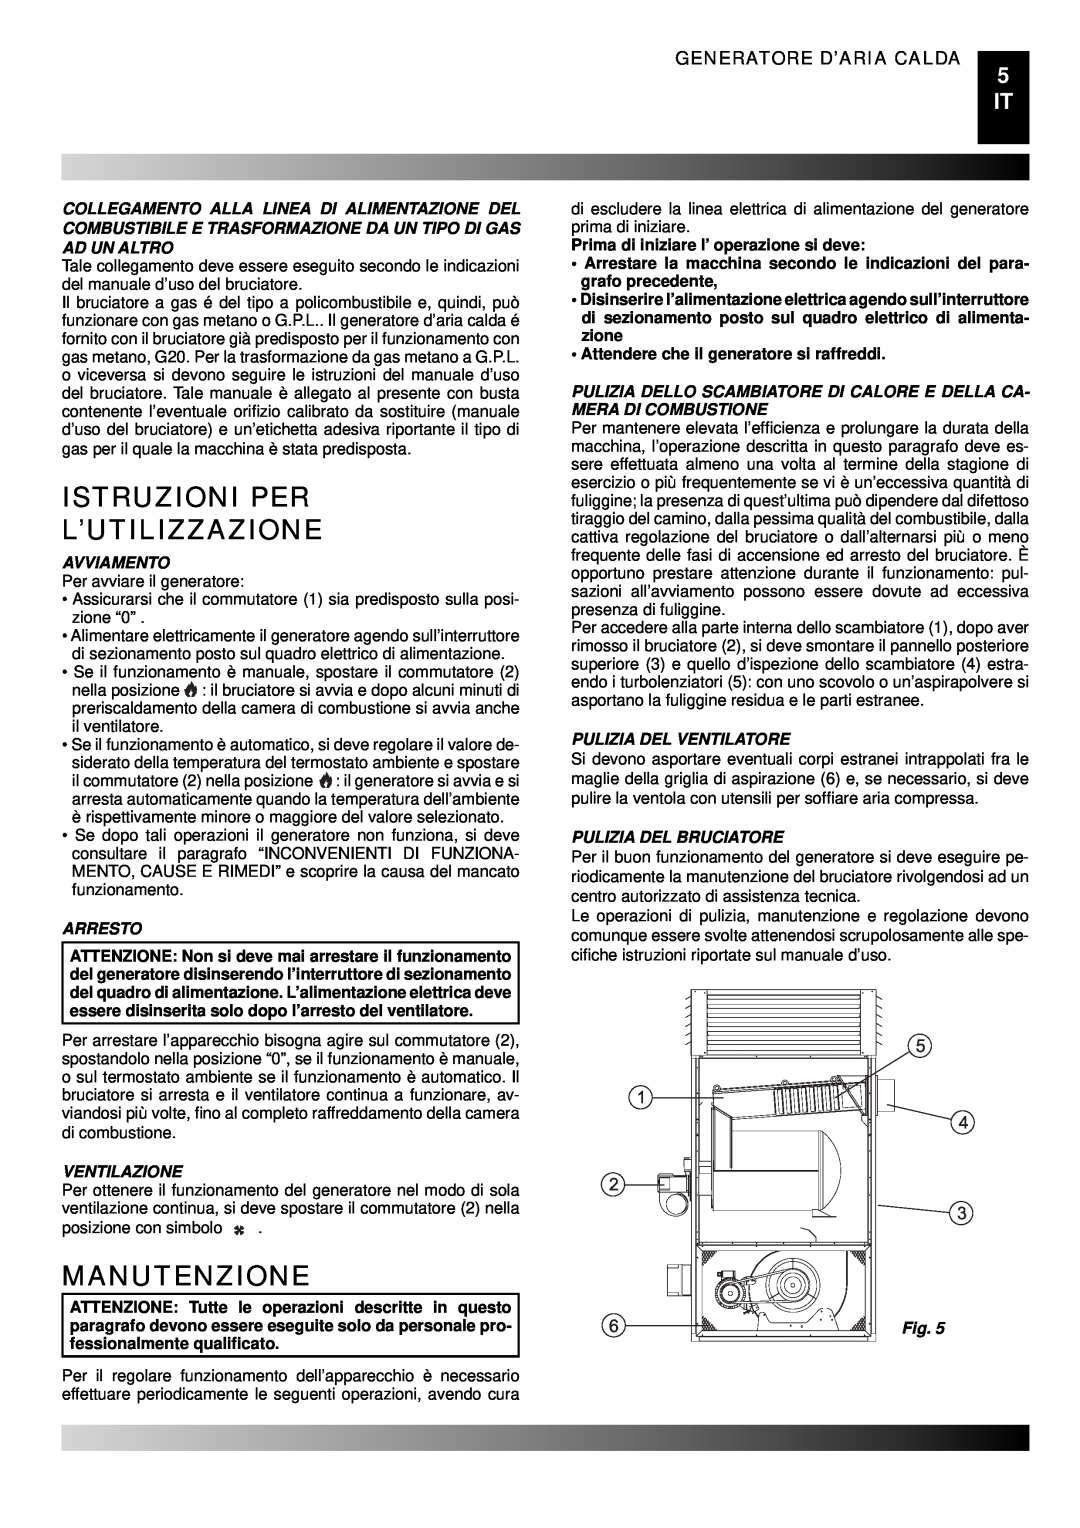 Master Lock BG 200, BG 100 manual Istruzioni Per L’Utilizzazione, Manutenzione, Generatore D’Aria Calda, Avviamento, Arresto 